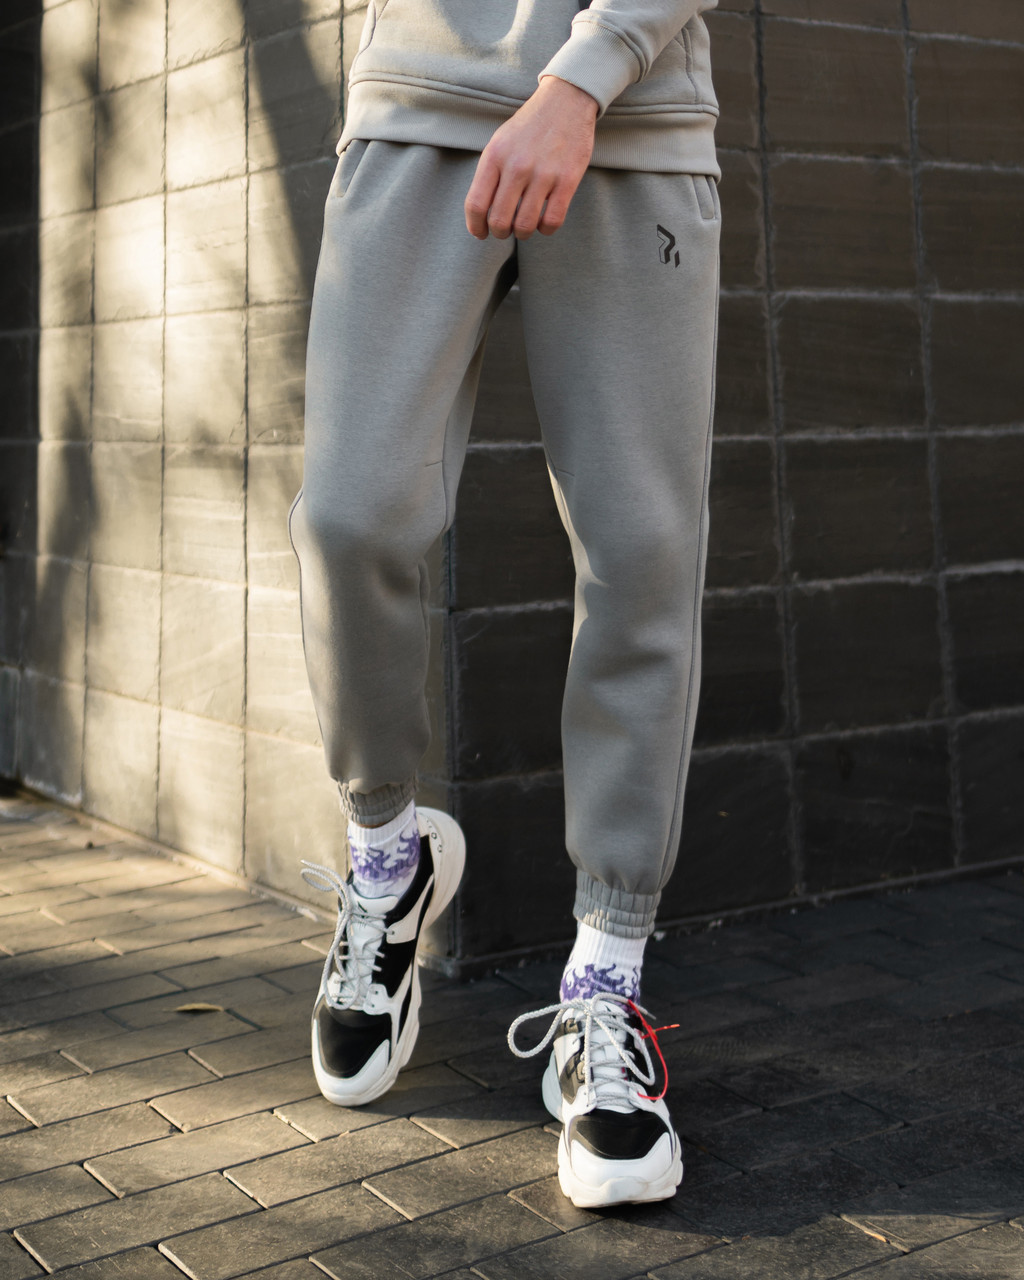 Теплые спортивные штаны Jog 2.0 серые Пушка Огонь - Фото 5